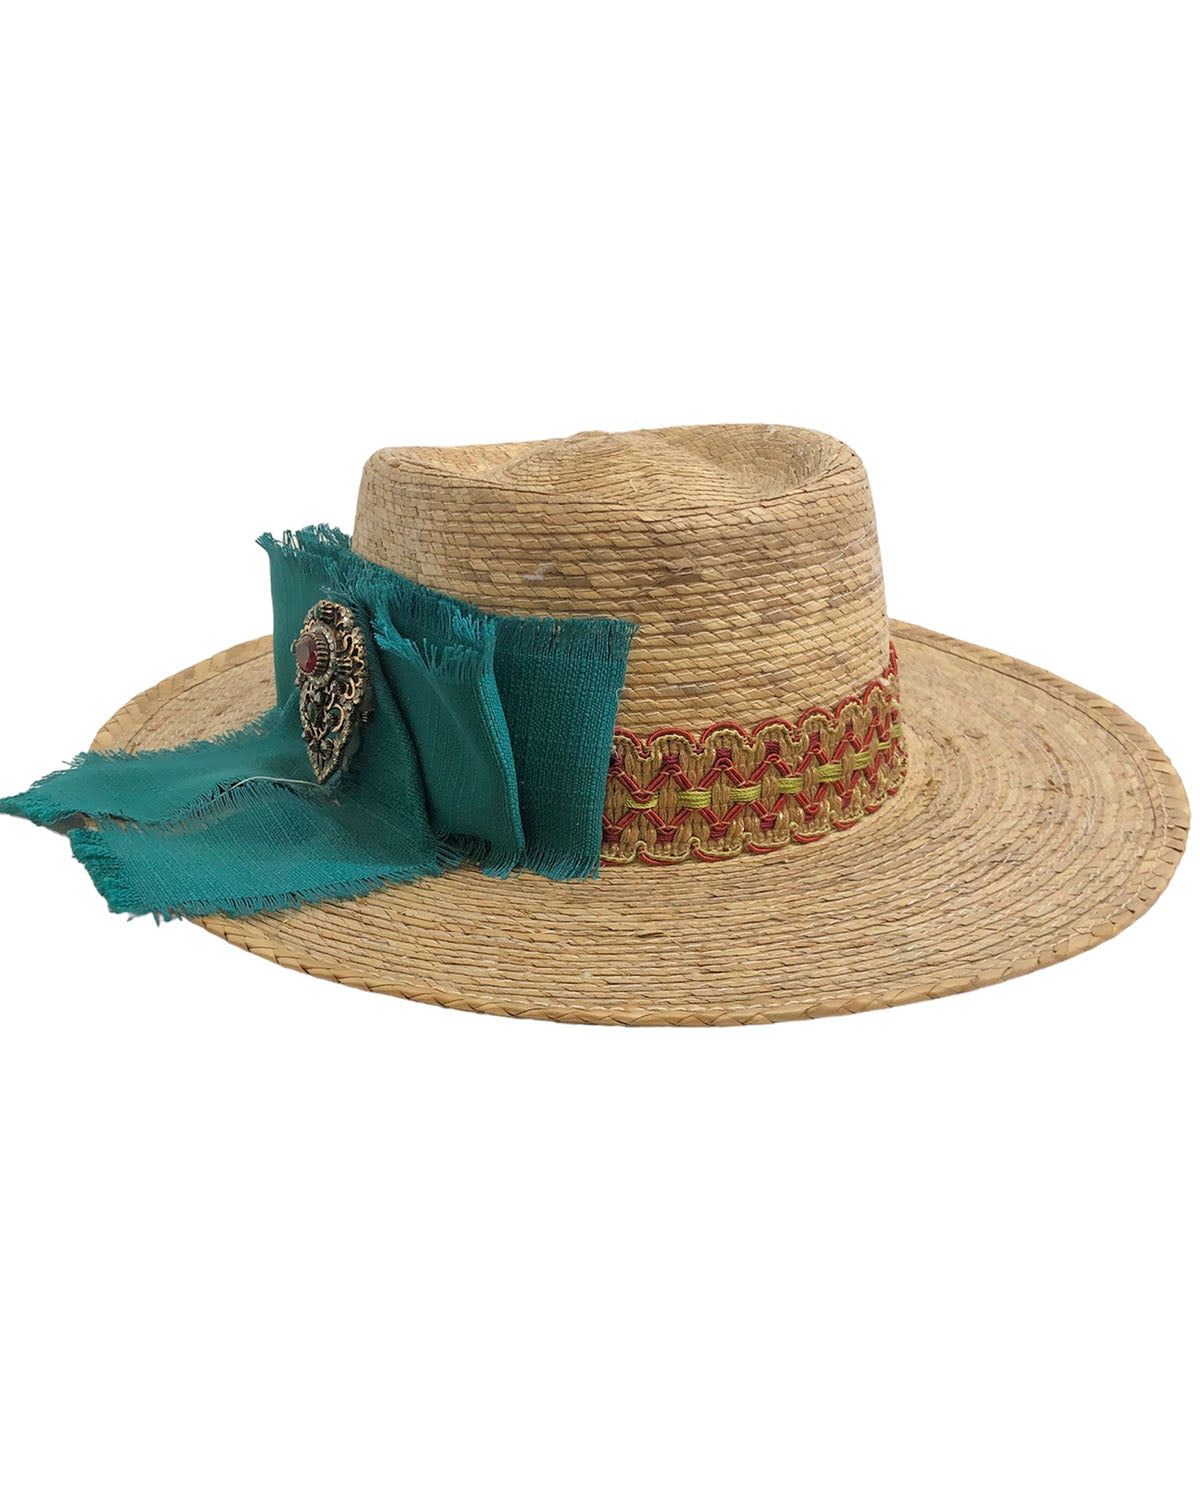 Sombrero de palma con lazo color turquesa y broche con piedras